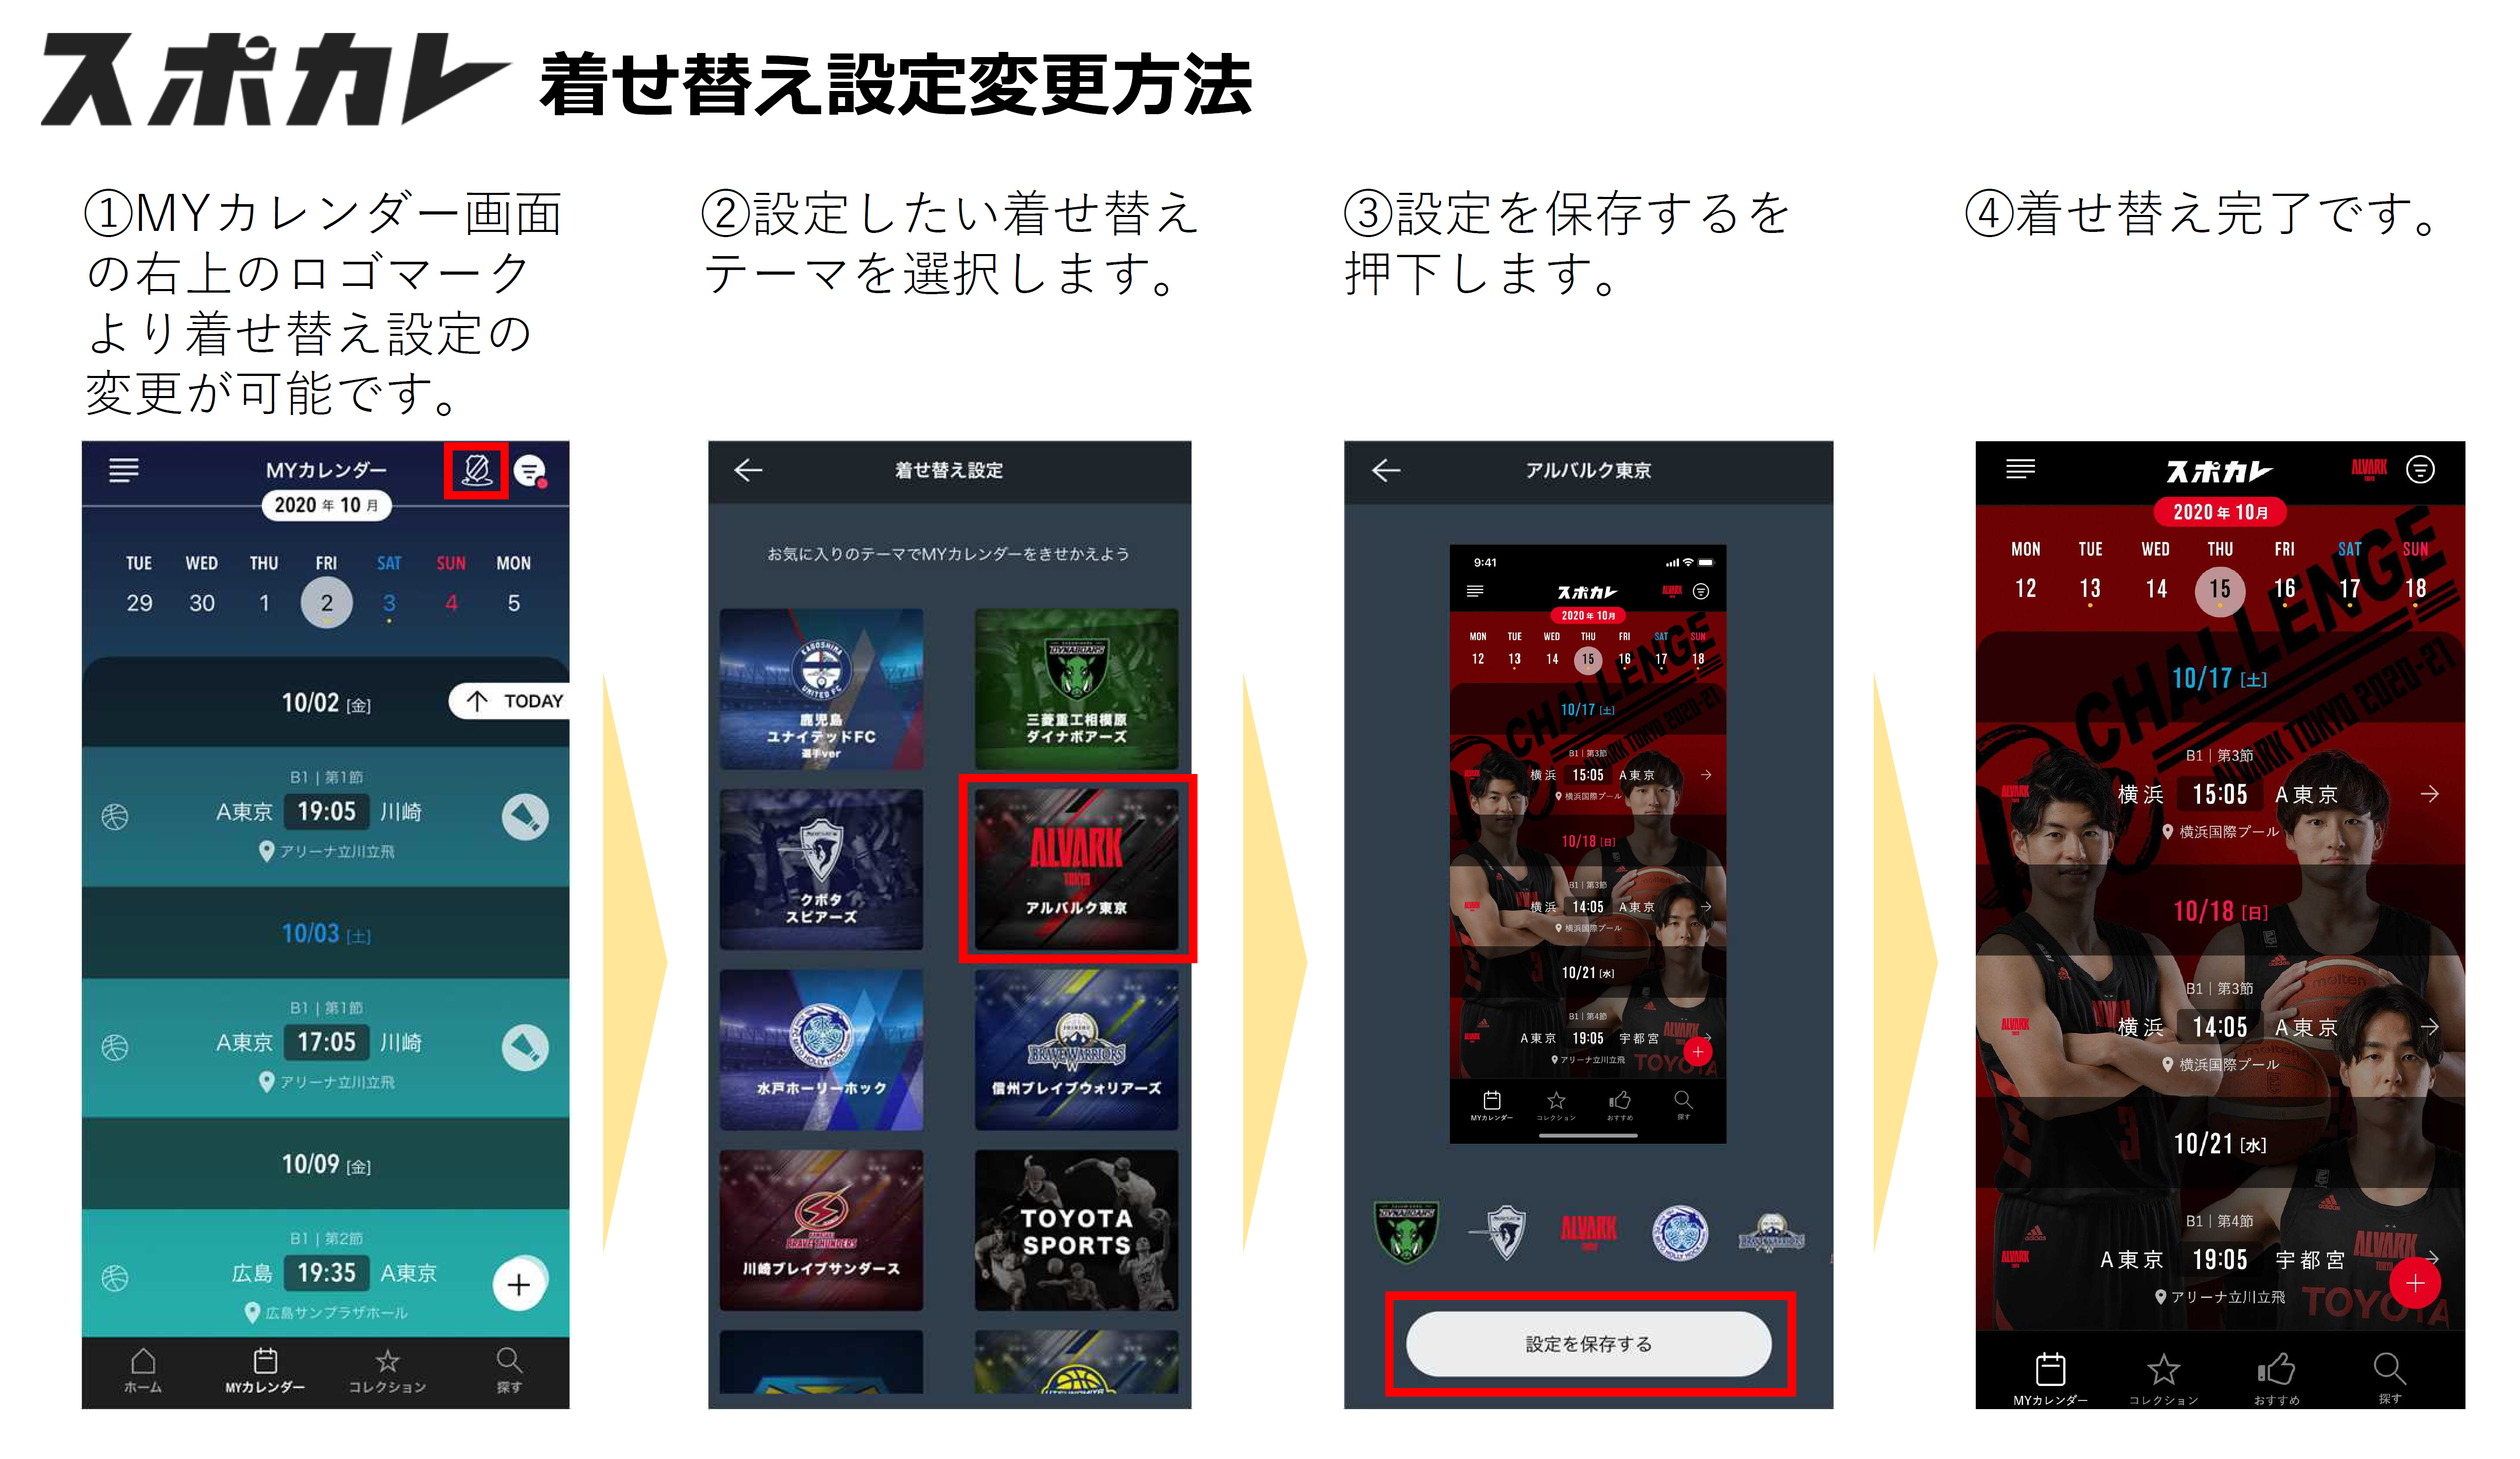 21ver アルバルク東京オリジナル着せ替えテーマ をスポーツ観戦情報アプリ スポカレ でリリース アルバルク東京